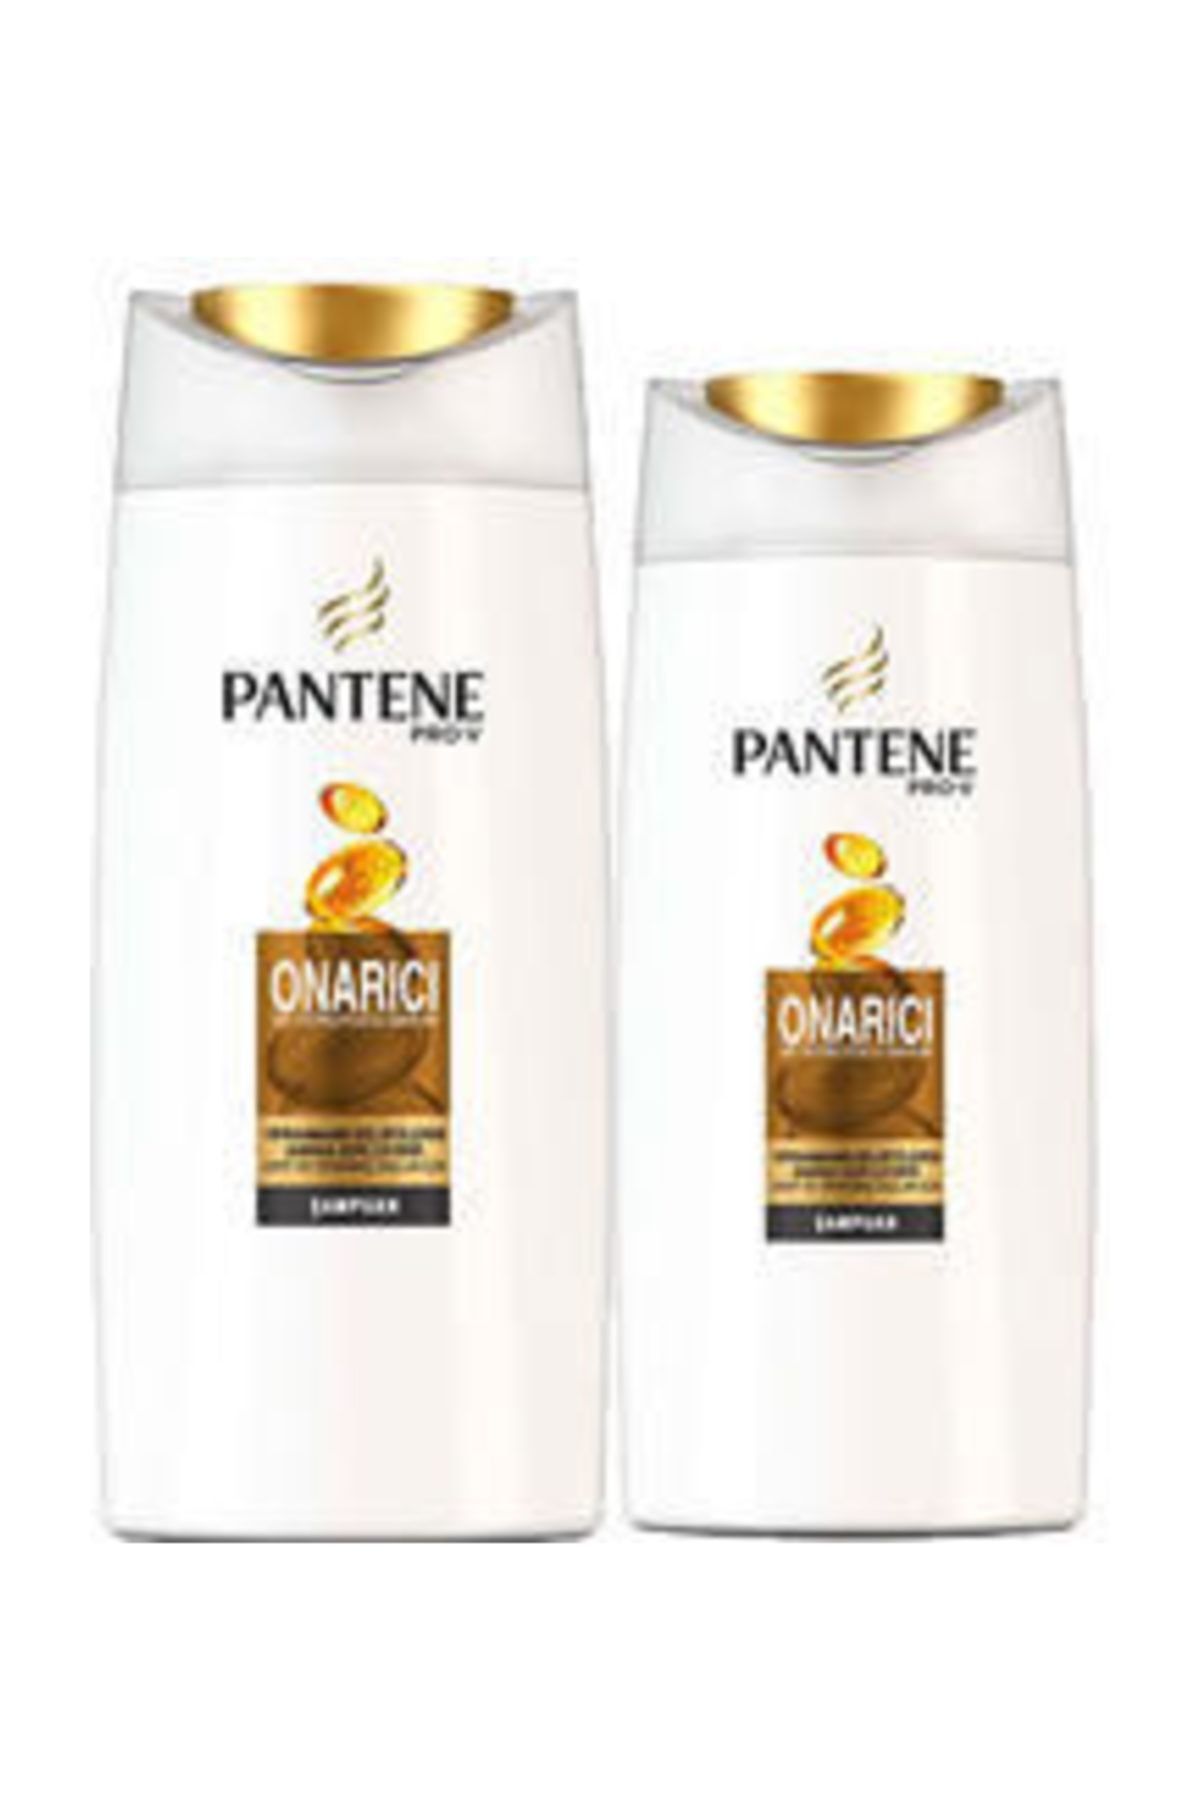 Pantene Onarıcı Koruyucu Şampuan 800 ml  (500 ml  + 300 ml )